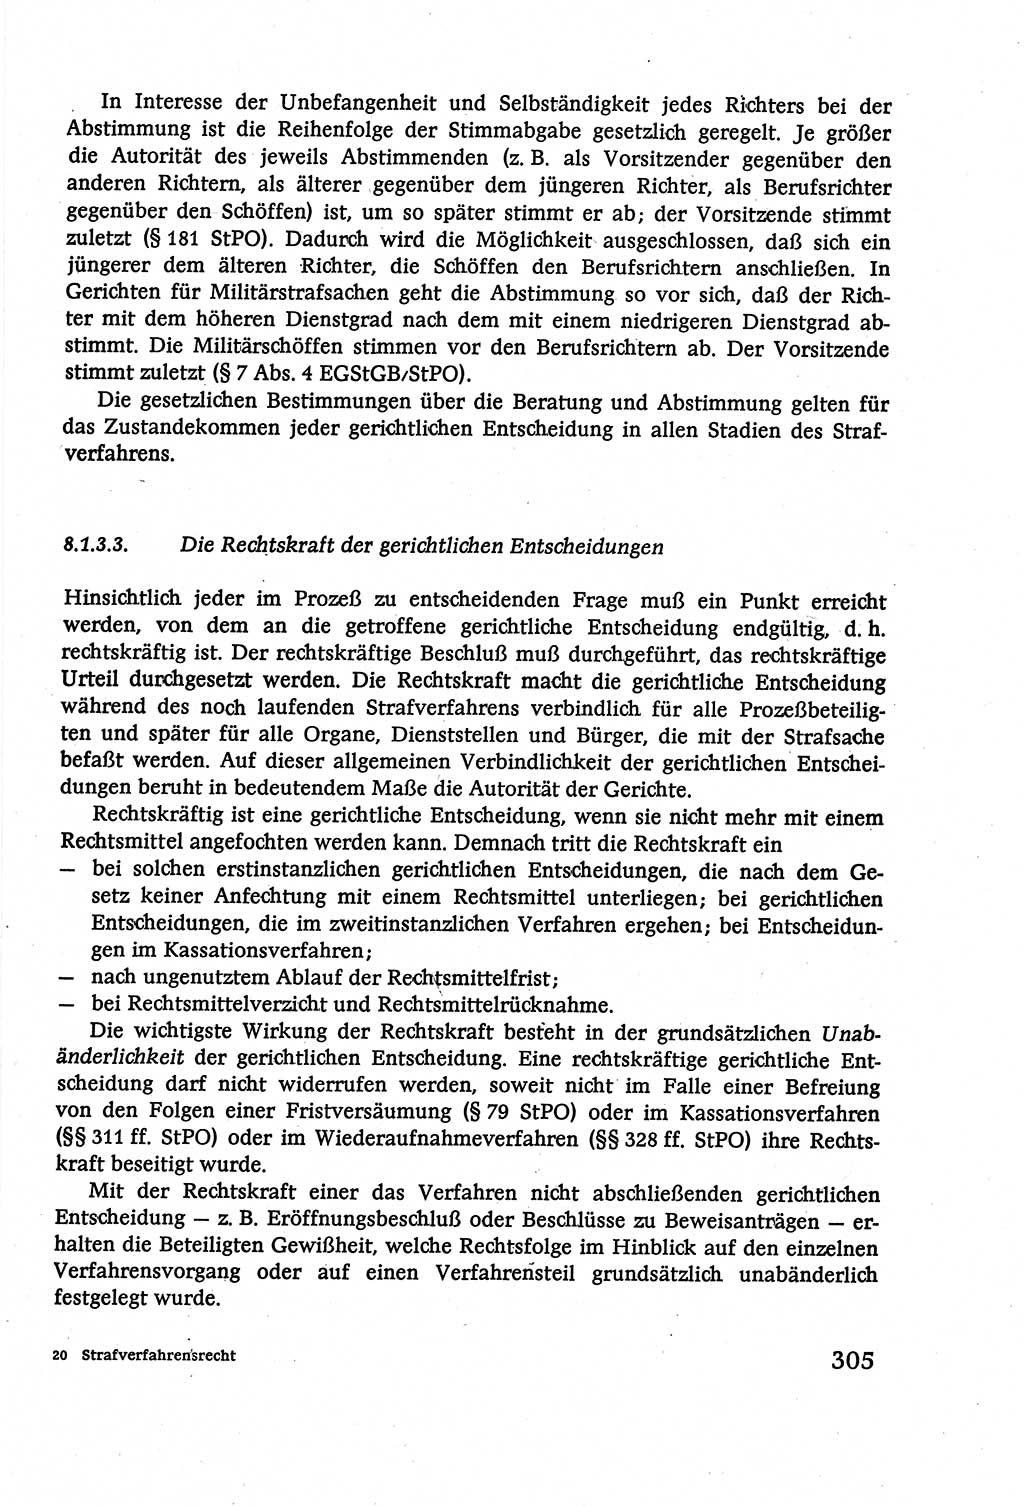 Strafverfahrensrecht [Deutsche Demokratische Republik (DDR)], Lehrbuch 1977, Seite 305 (Strafverf.-R. DDR Lb. 1977, S. 305)